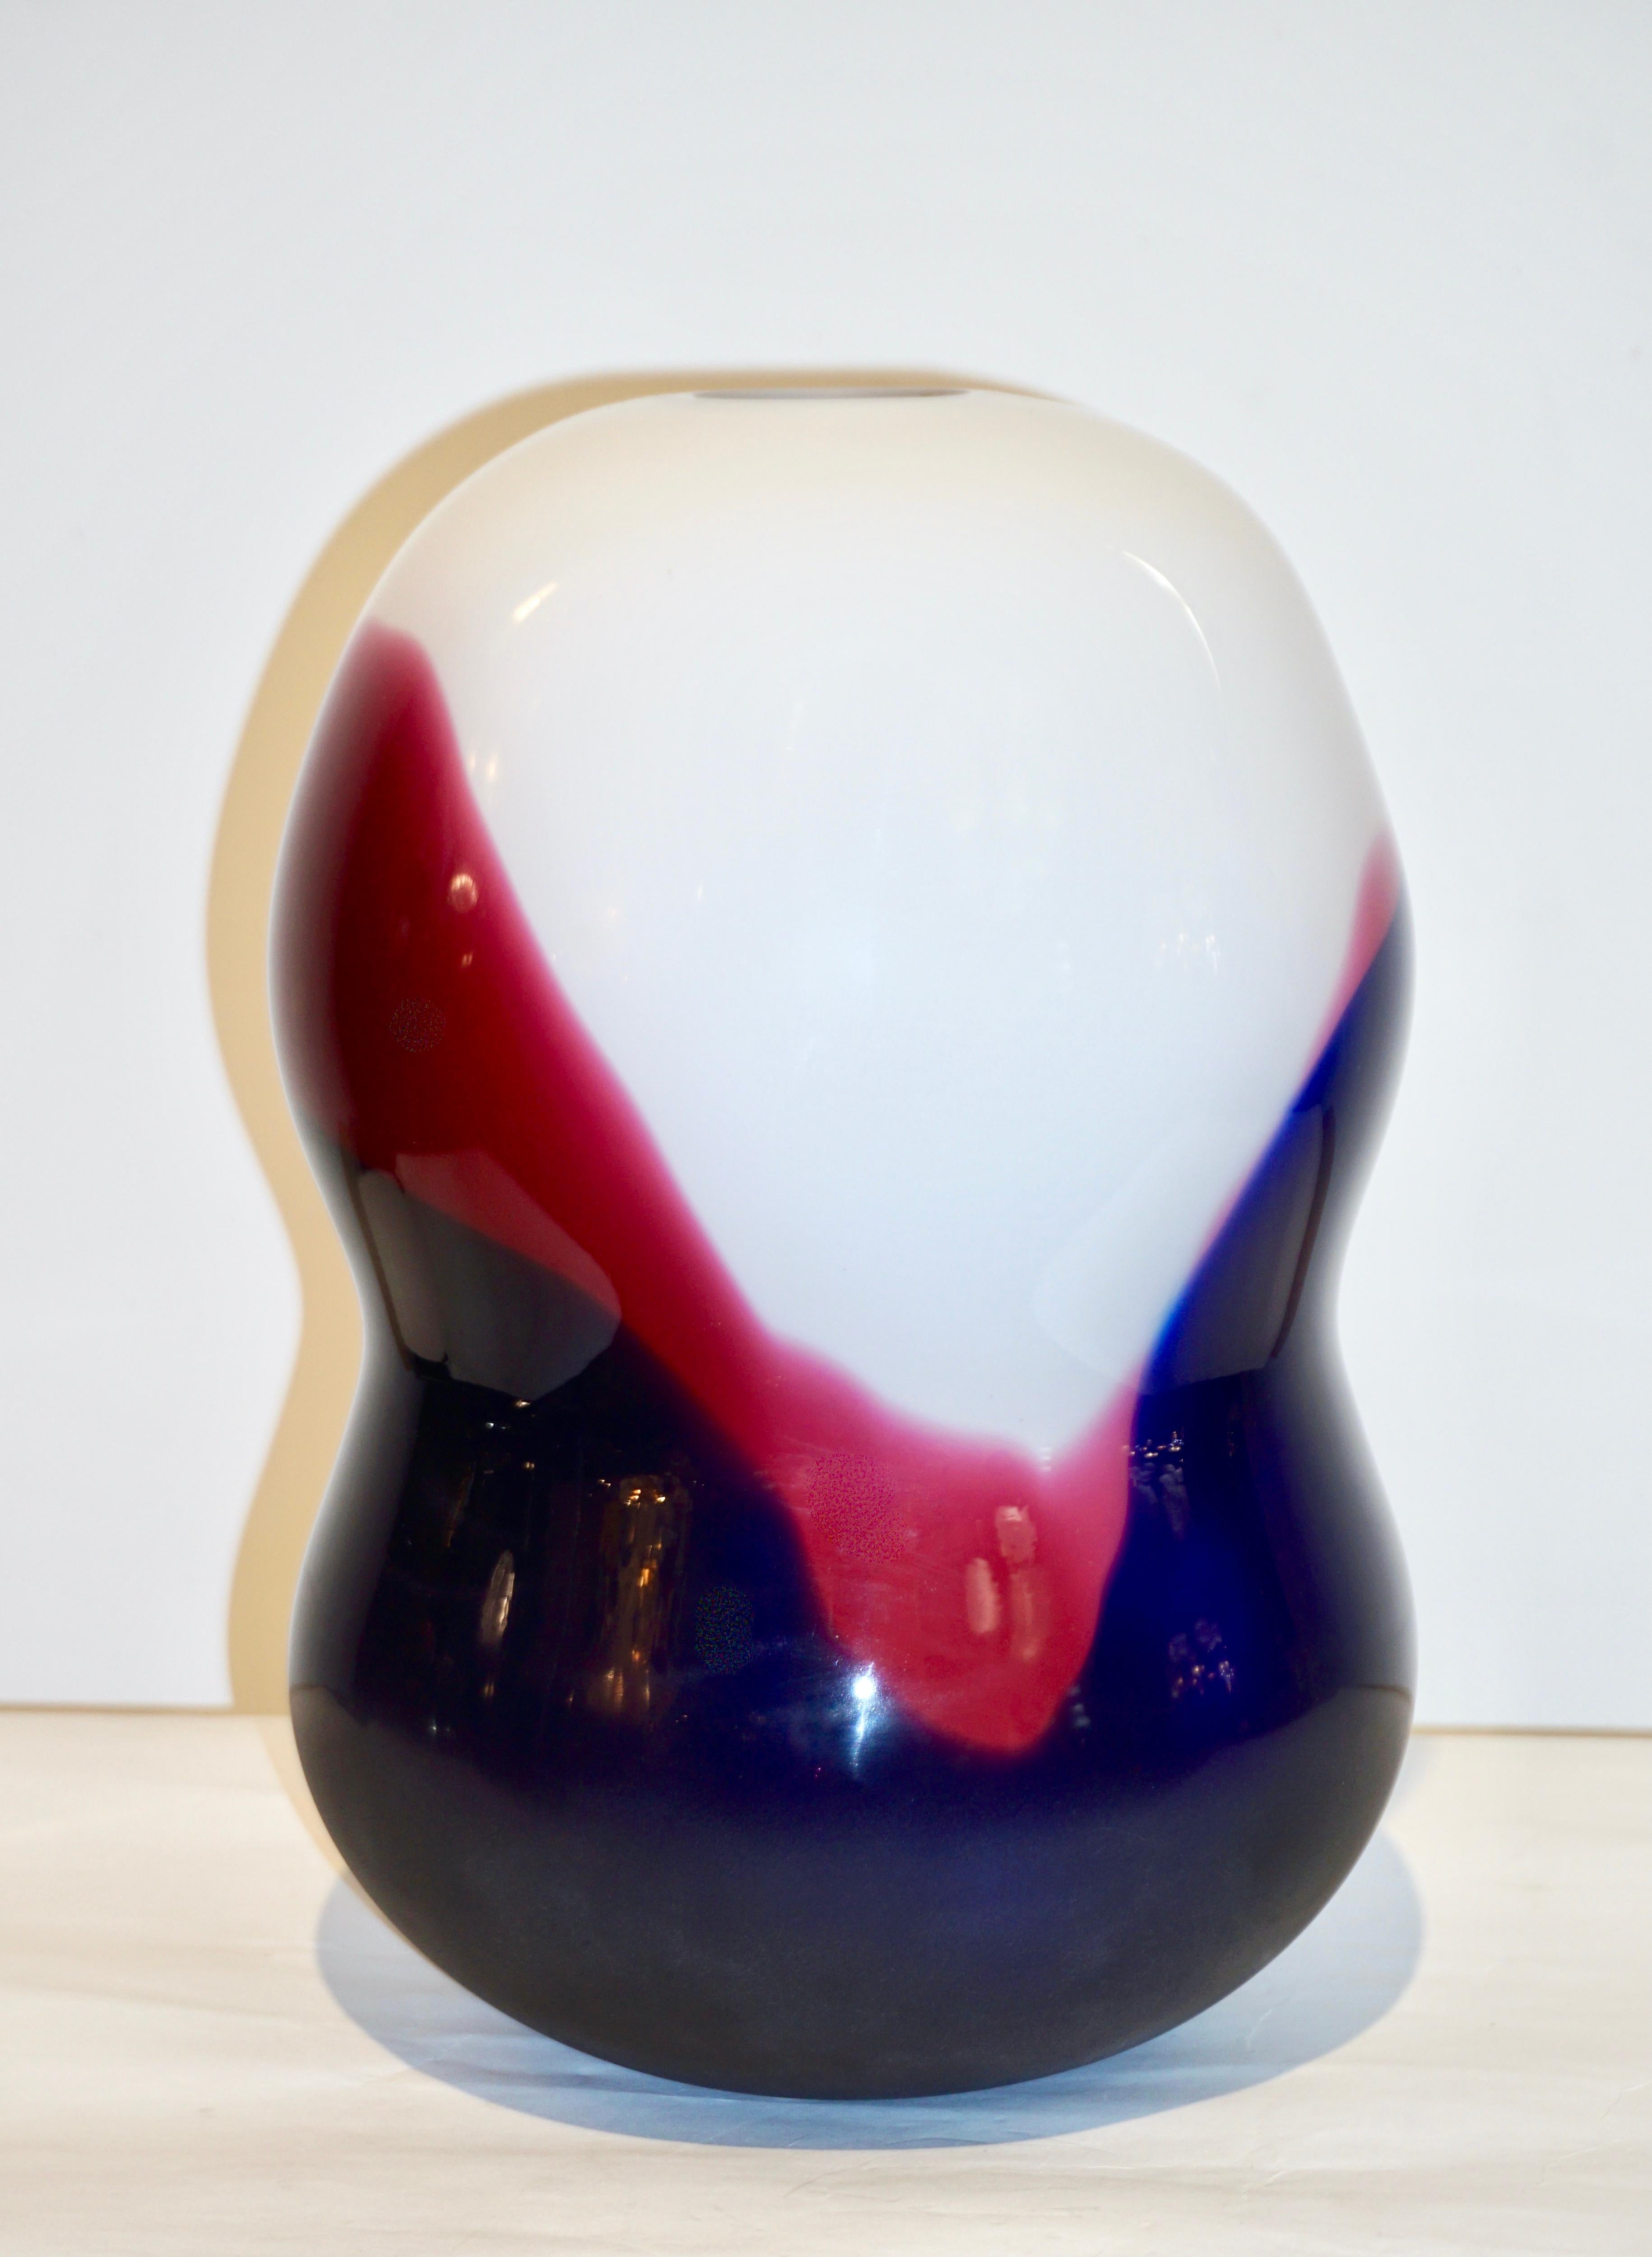 Geblasenes Murano-Kunstglas, signiert Formia, exklusiv für Roche Bobois Paris hergestellt. Das sehr moderne, minimalistische Design und die Ausführung bestechen durch die luxuriöse Qualität des Glases, das an Emaille erinnert. Mehrere Glasschichten